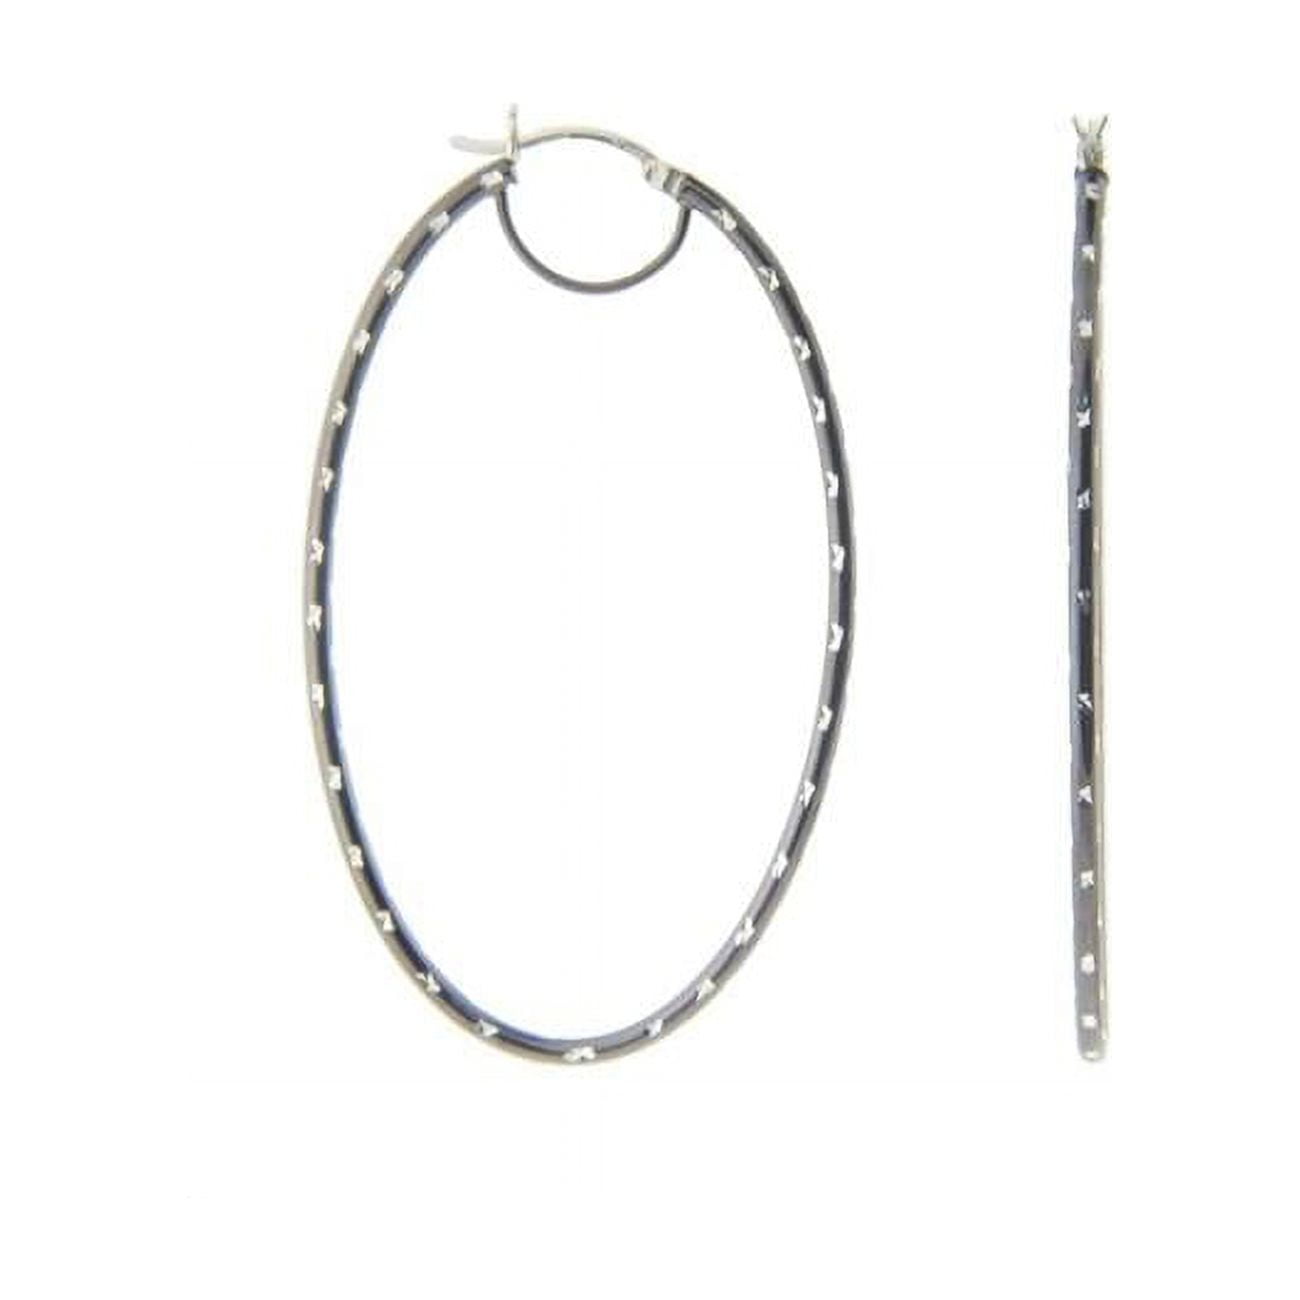 155106b Large Oval Diamond Cut Hoop Earrings In Sterling Silver & Black Rhodium